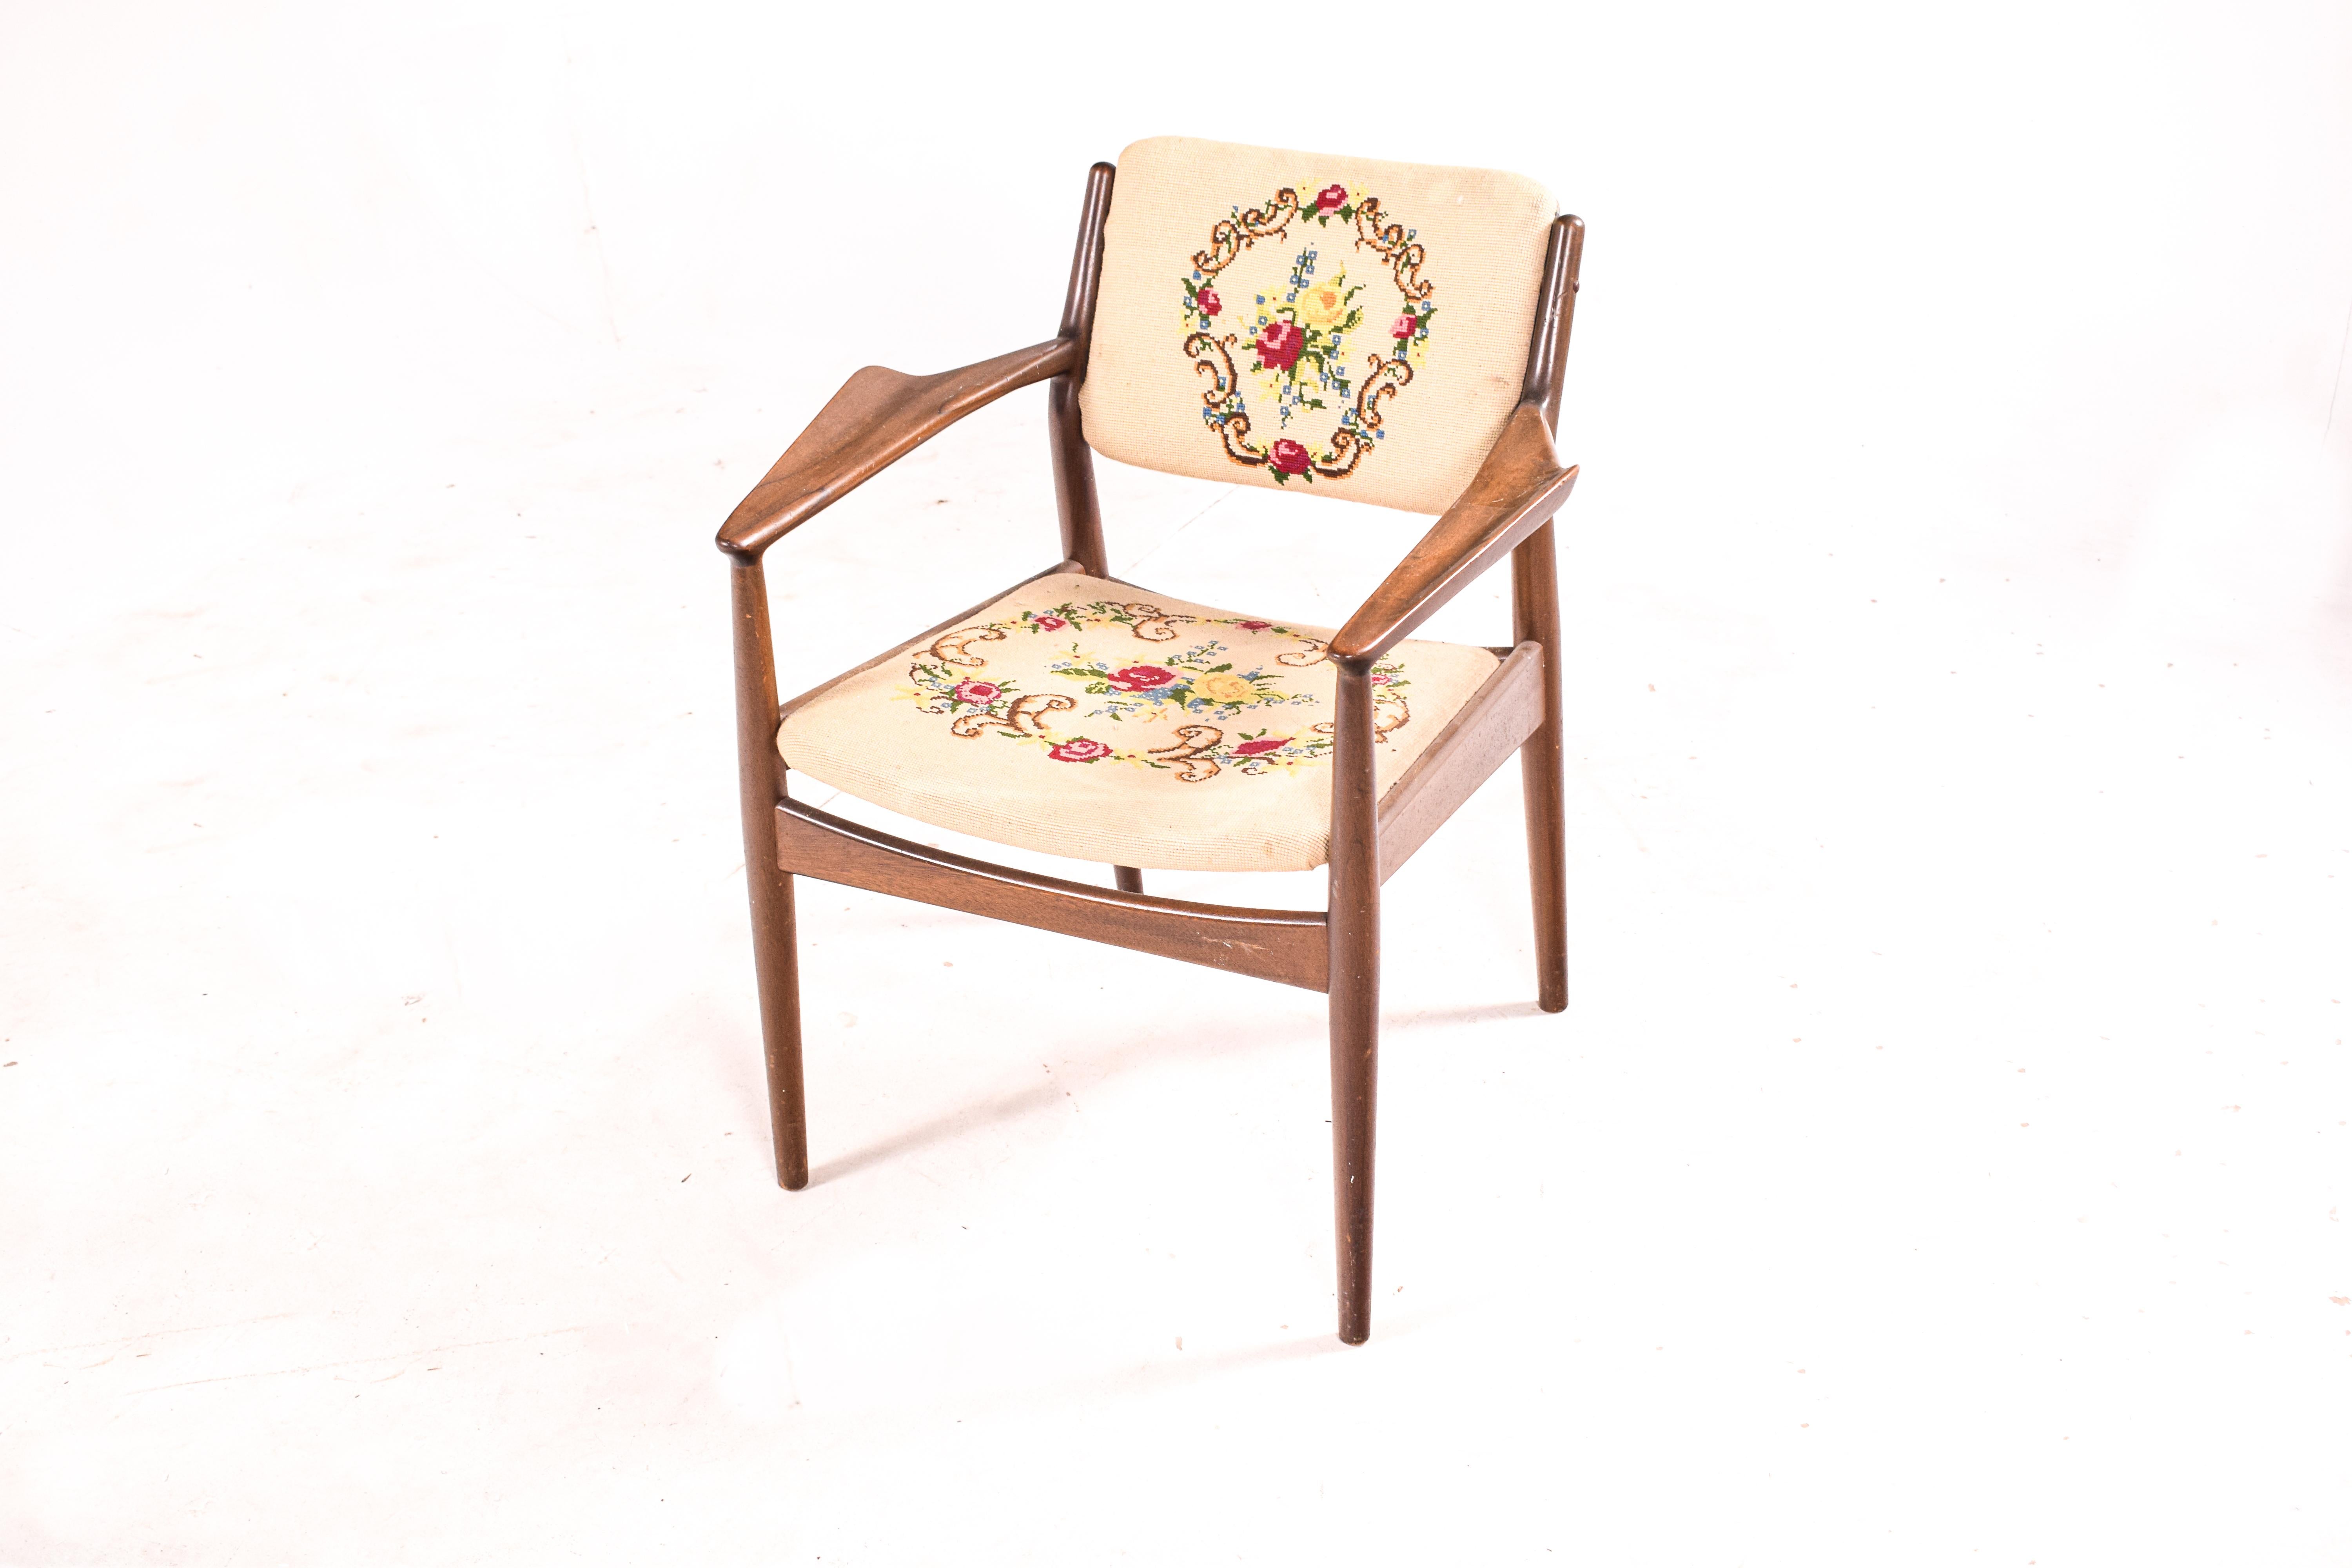 Dieser moderne Sessel aus der Mitte des Jahrhunderts ist der Inbegriff dänischen Designs und wurde mit viel Liebe zu Form und Funktion gefertigt. Er wurde in den 1950er Jahren von dem berühmten Arne Vodder für Sibast entworfen und trägt die